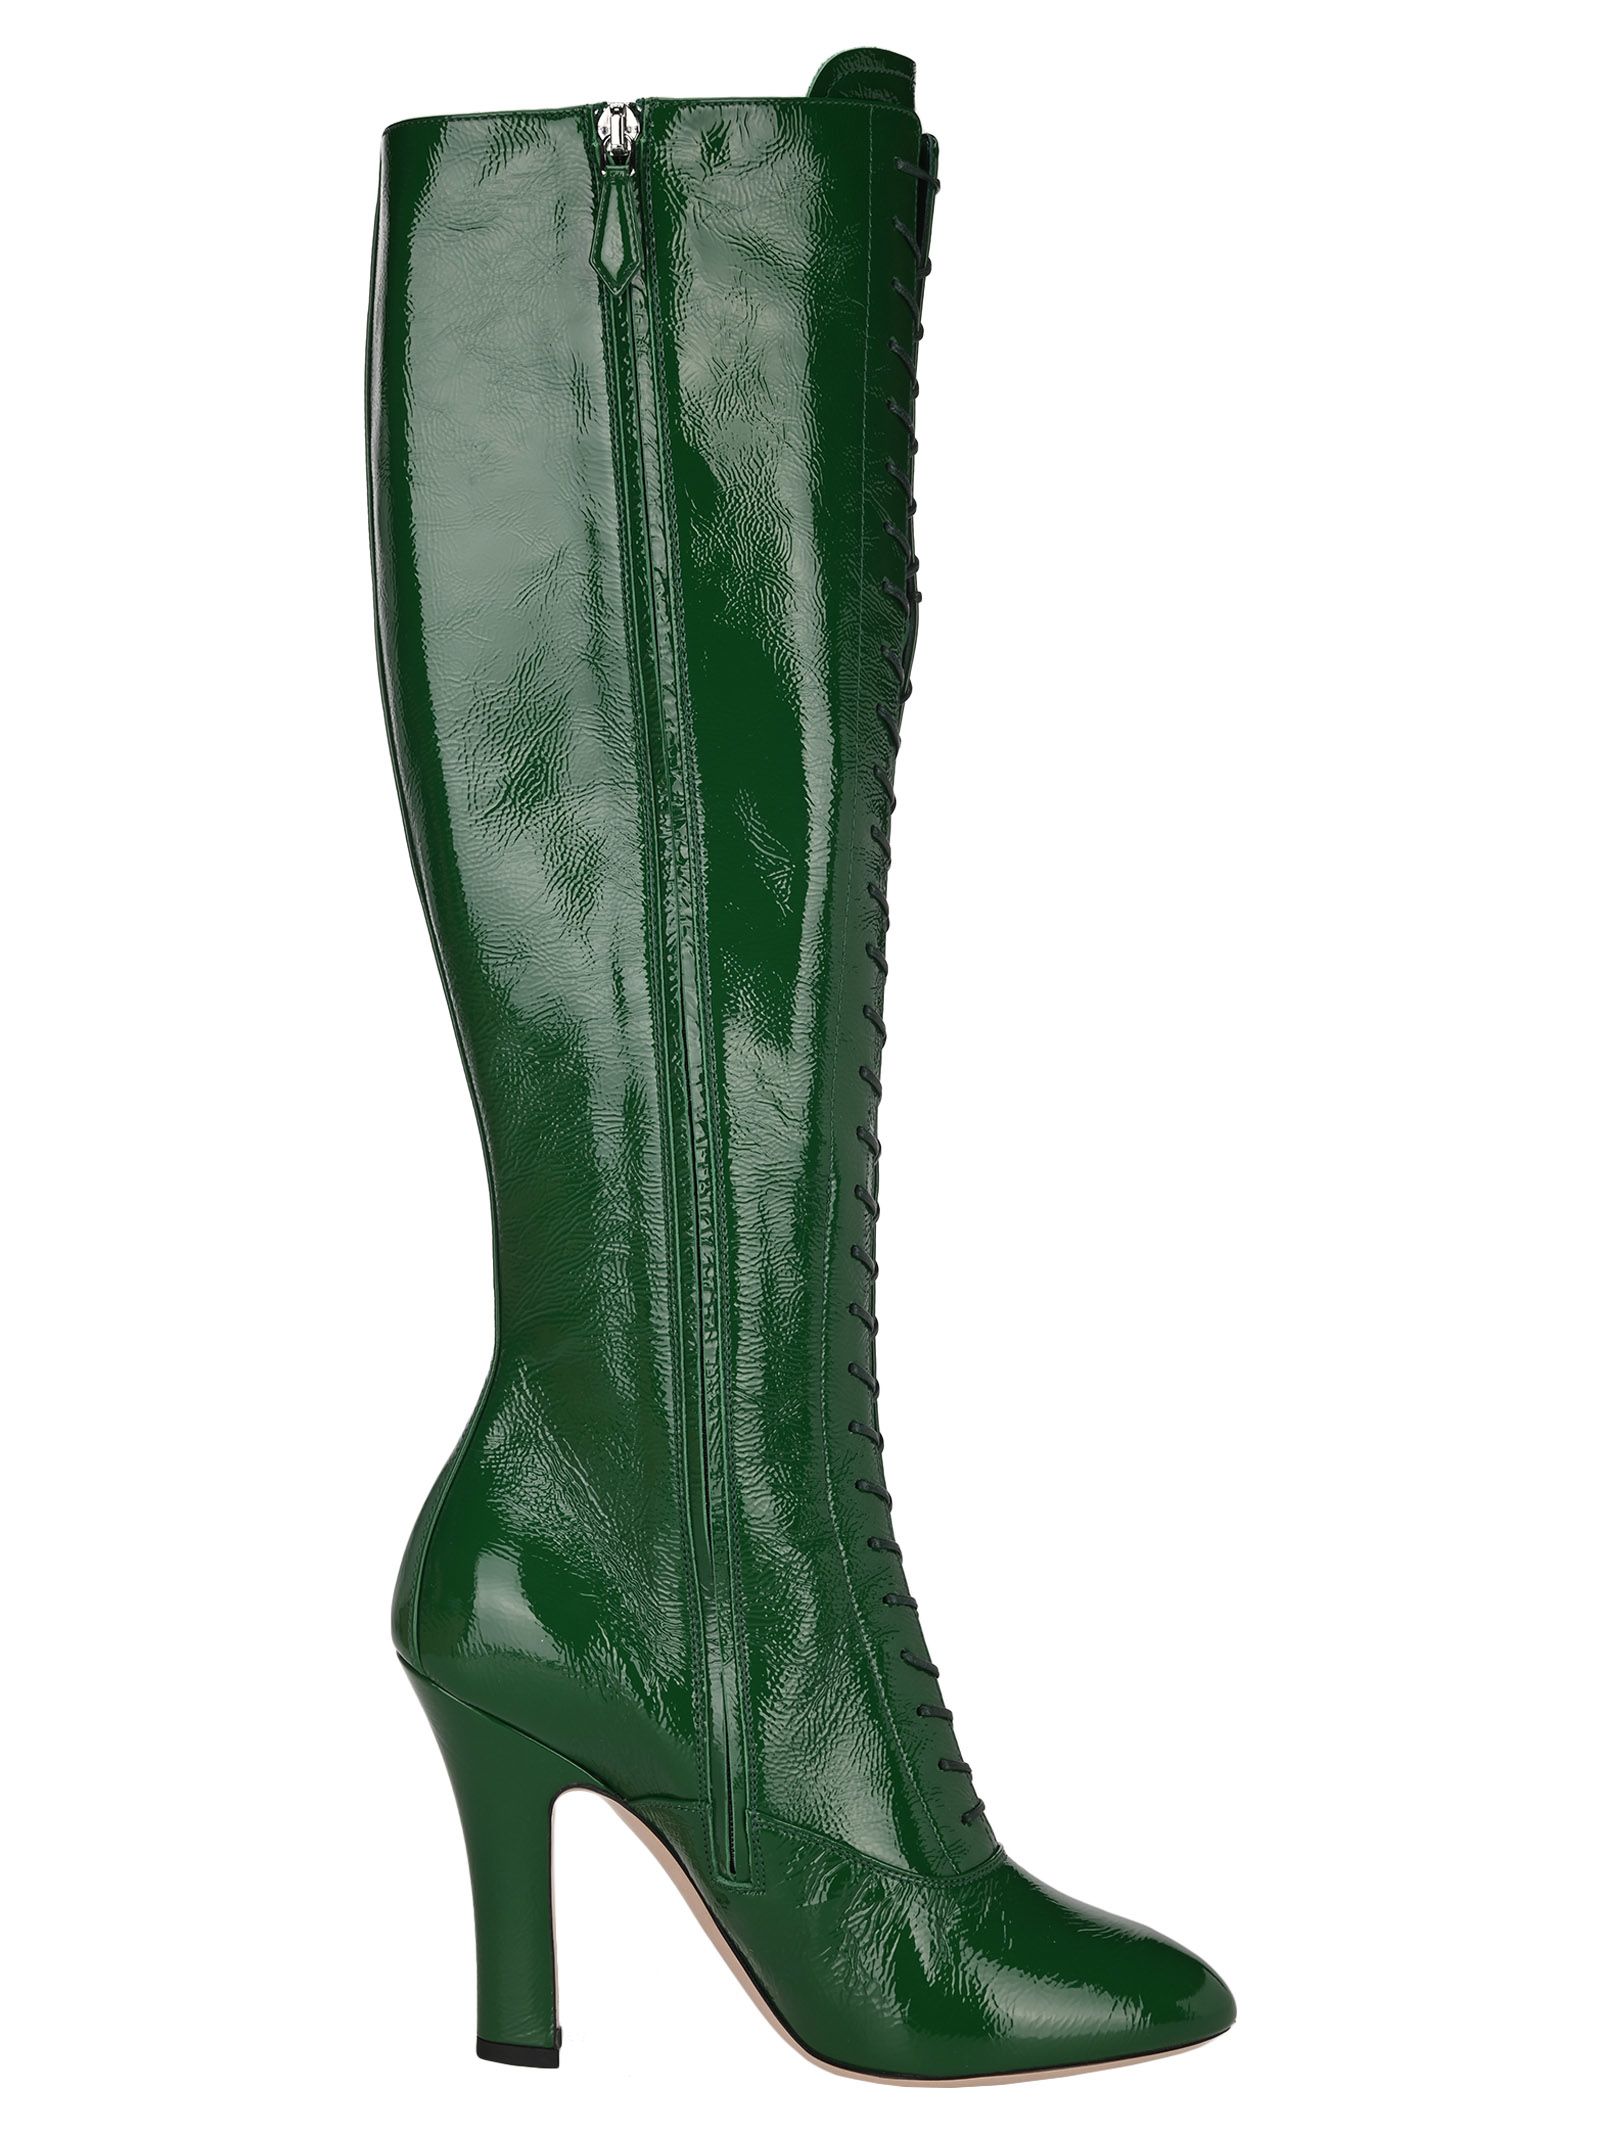 green knee high boots